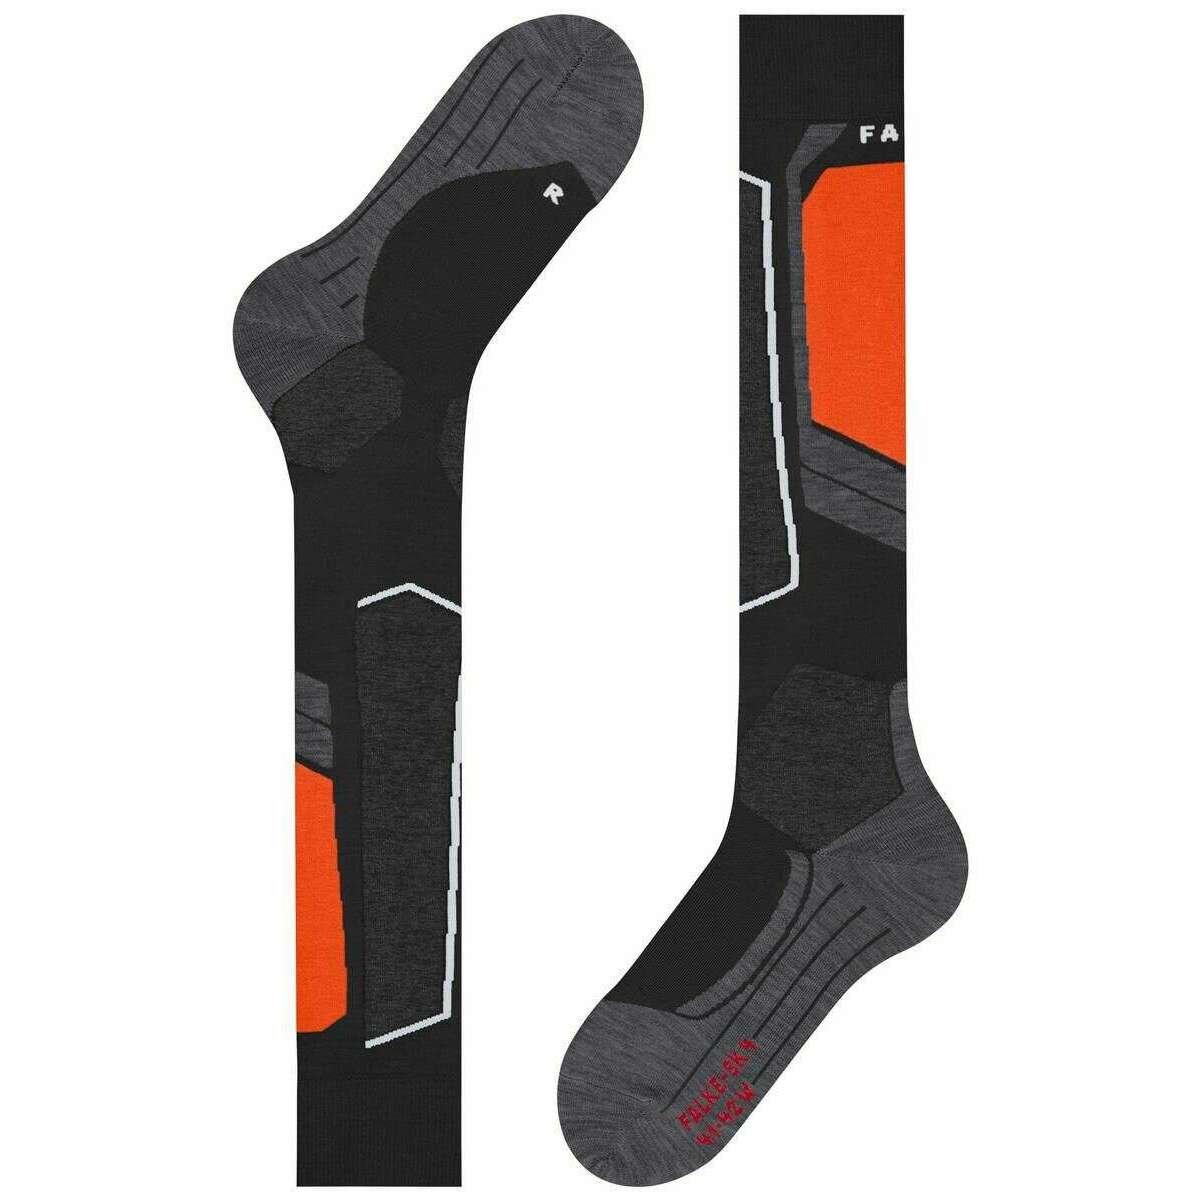 Falke Black SK4 Advanced Knee High Socks | The Socks Emporium